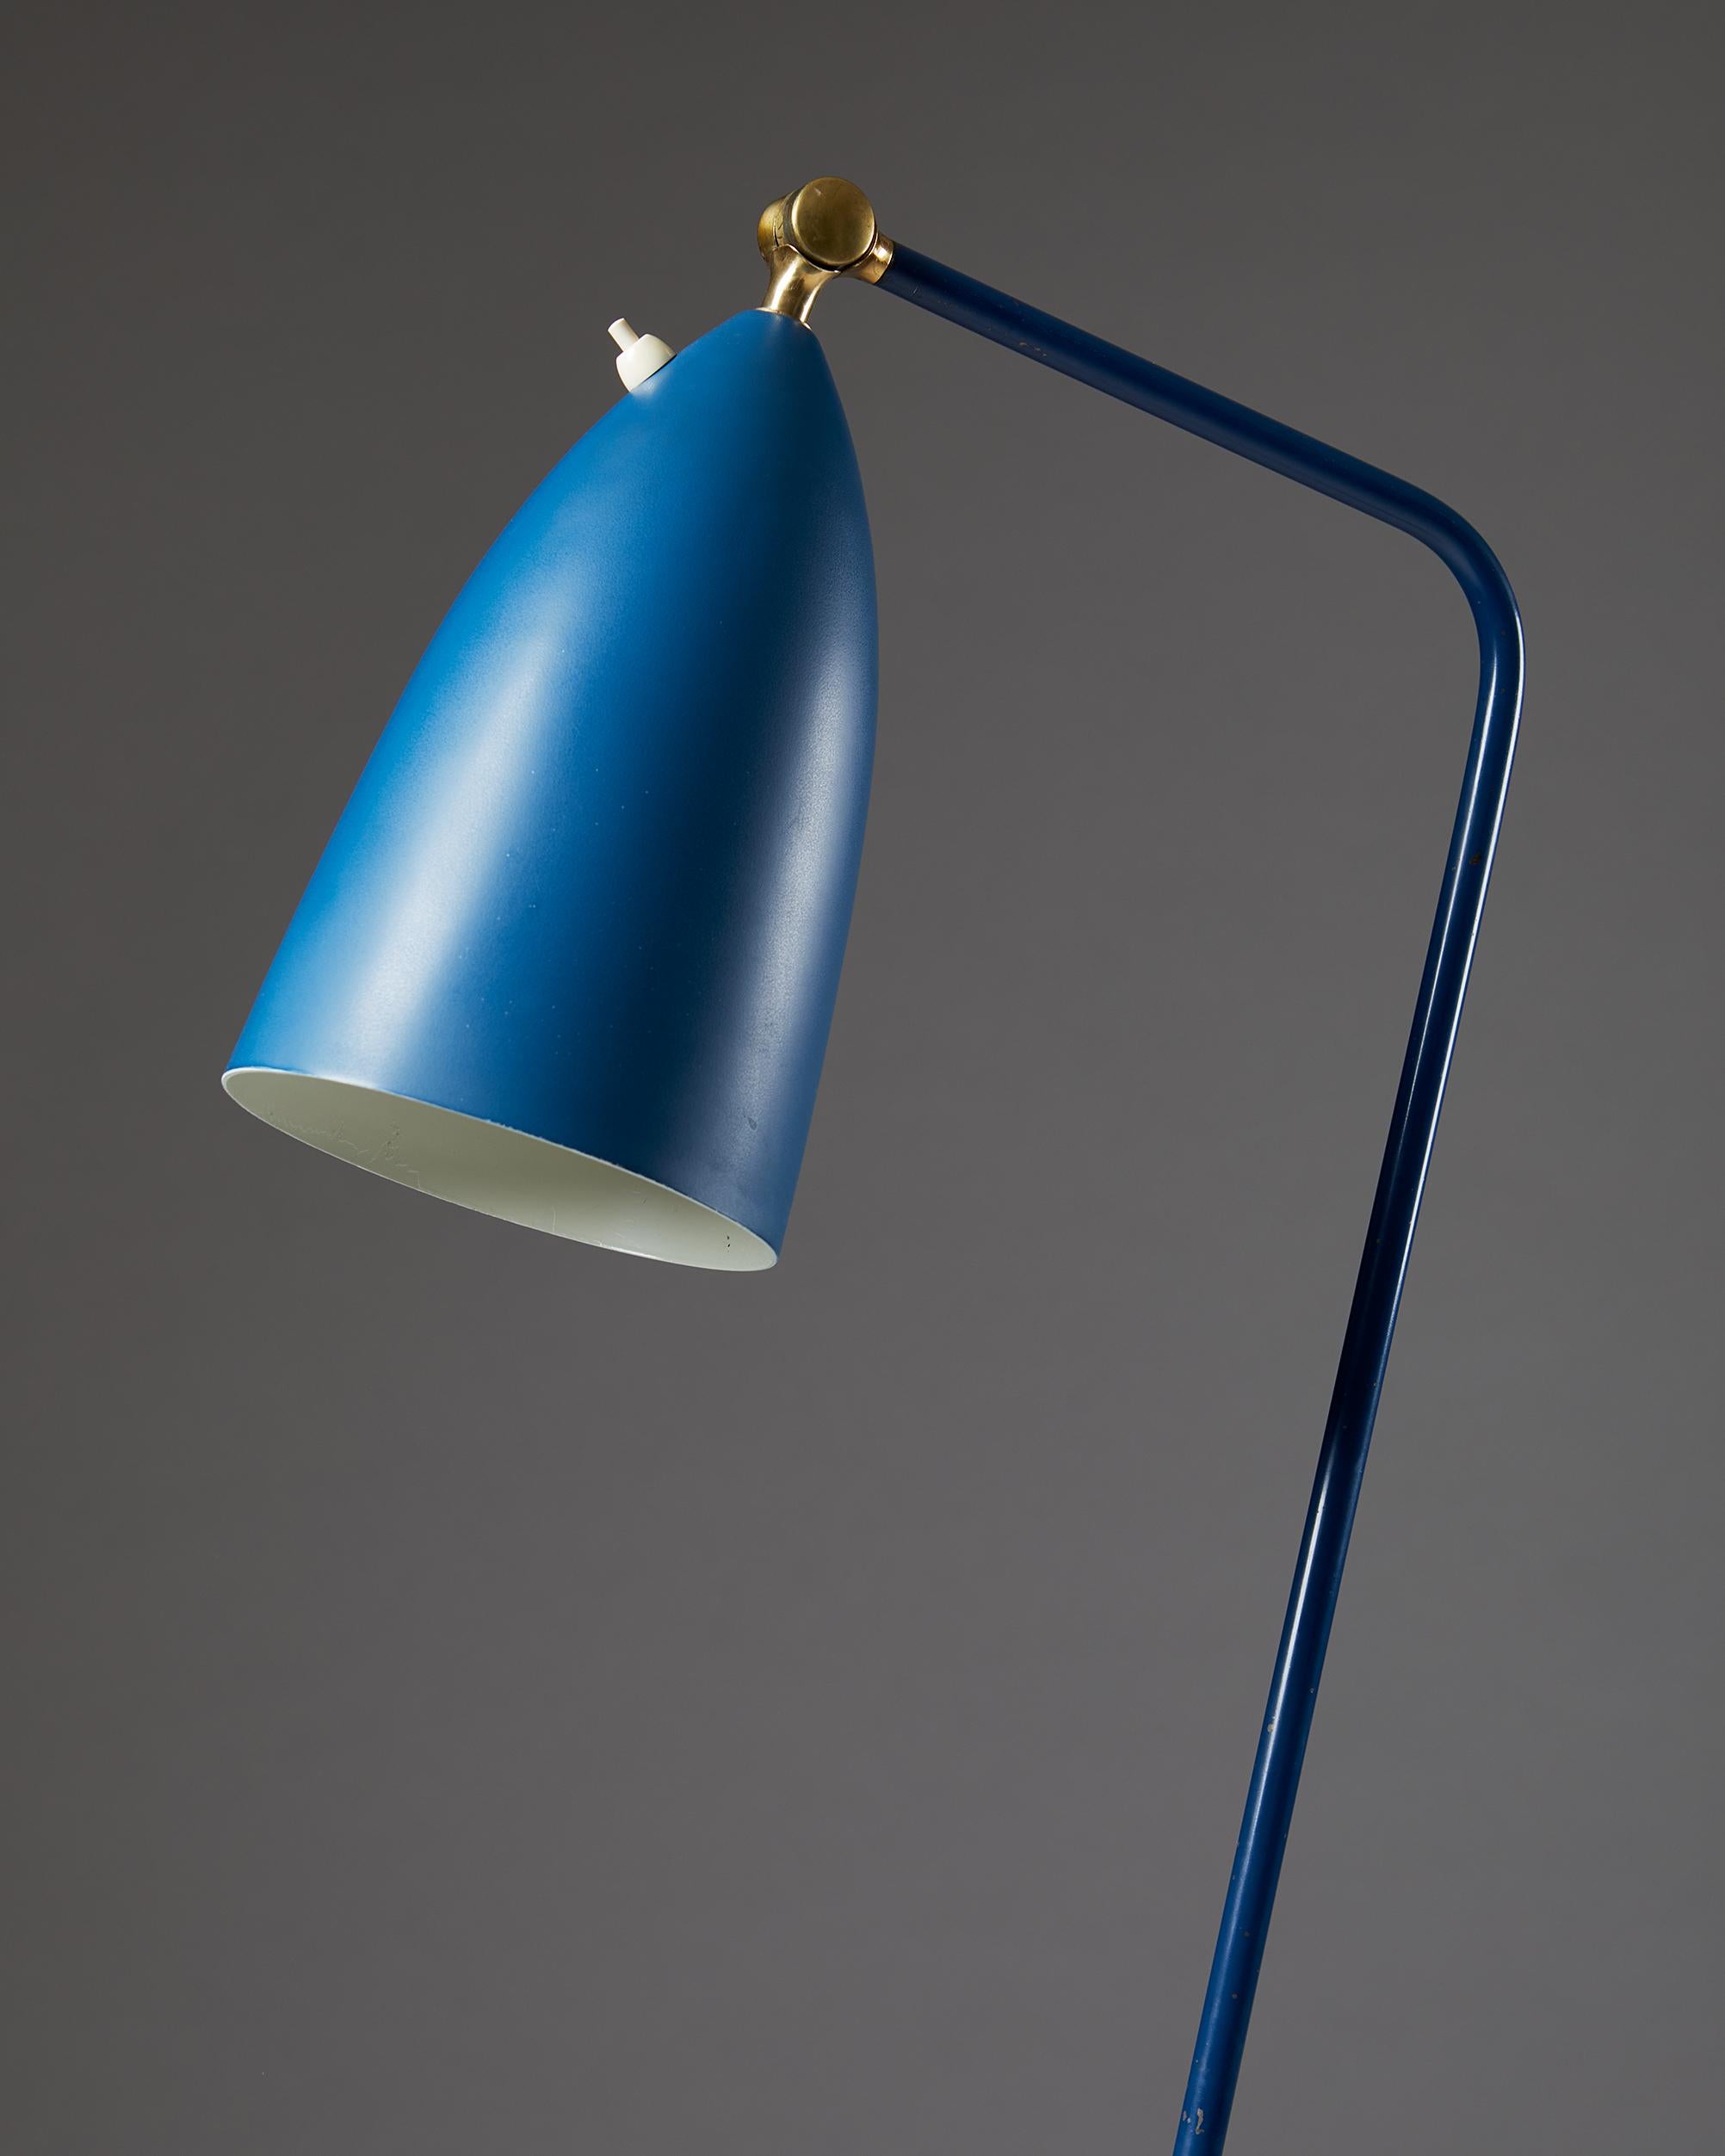 Swedish Floor Lamp 'Grasshopper' Model G-33 Designed by Greta Magnusson Grossman